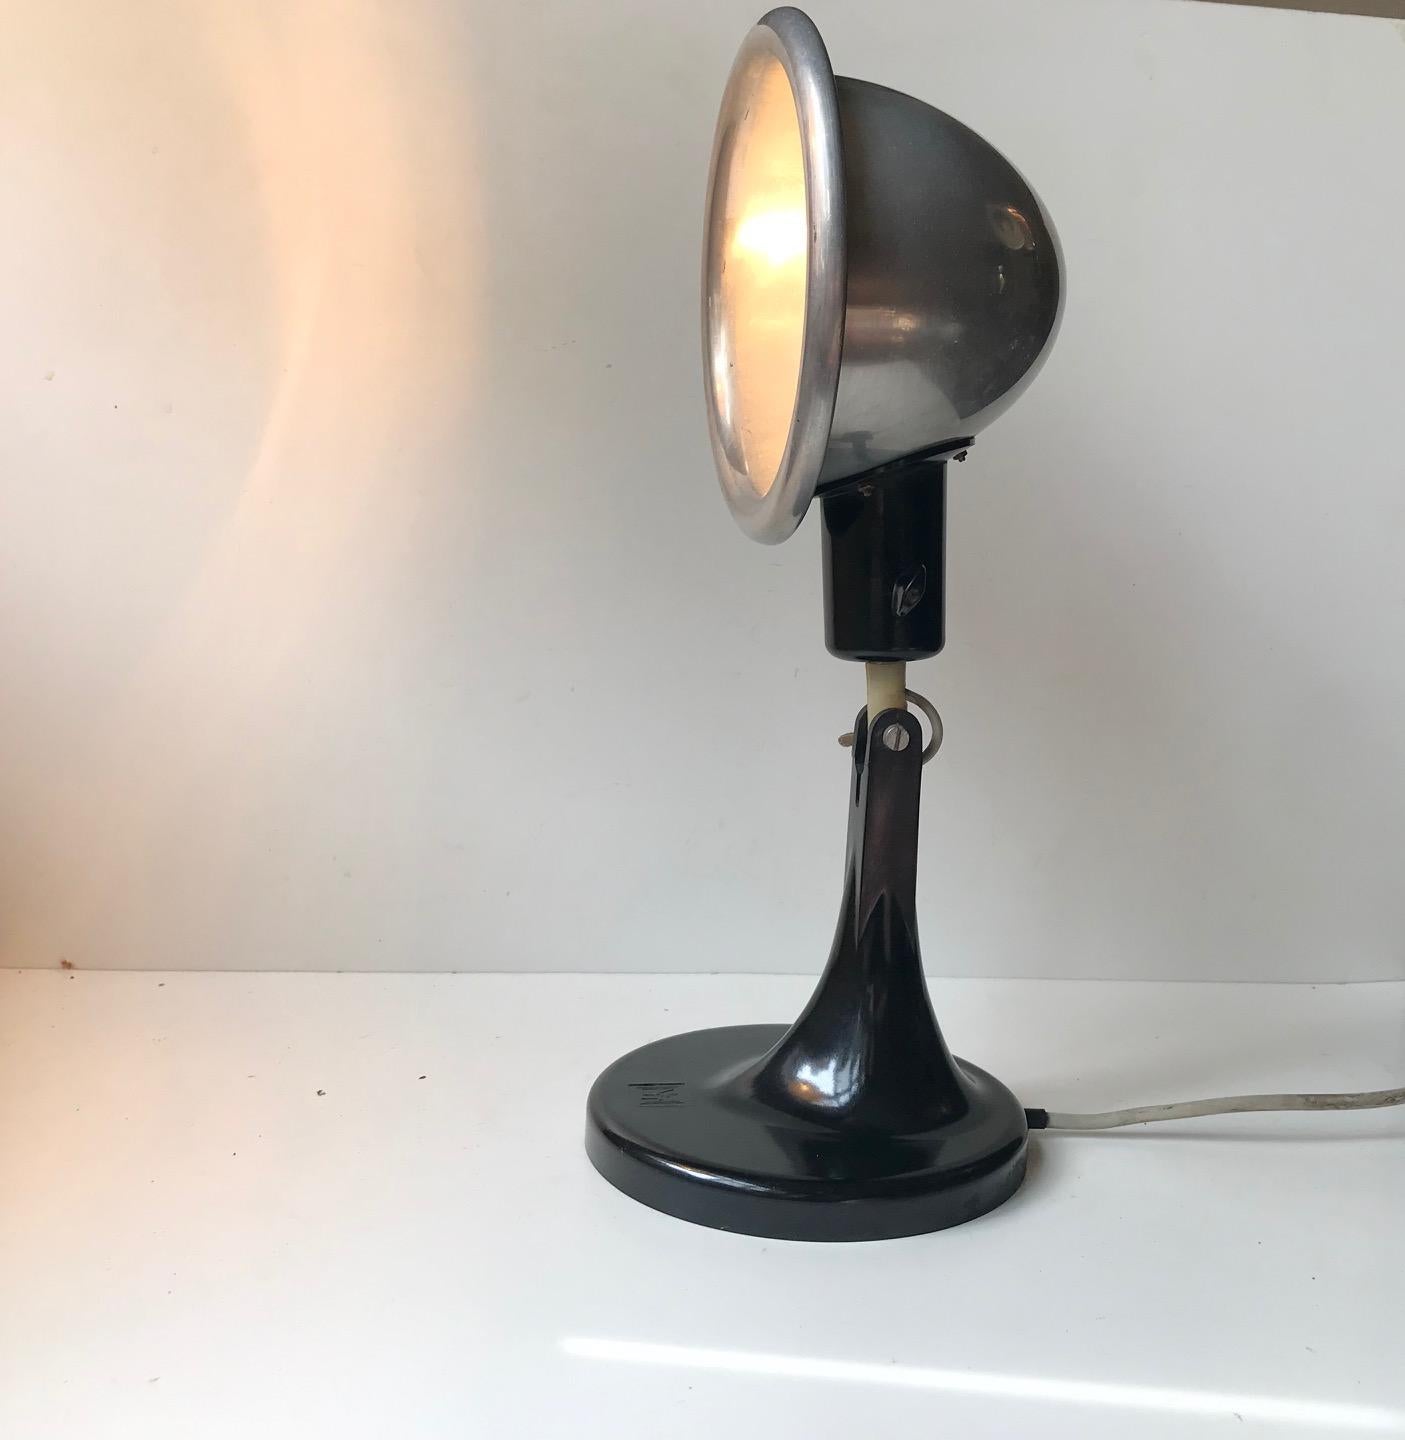 Verstellbare ostdeutsche Schreibtischlampe aus Bakelit von EMVT: Elektro-Medizin-Vakuum-Technik, ca. 1940er Jahre. Ungewöhnlicher, bowlerhutförmiger Schirm und organisch geformter Sockel.
 